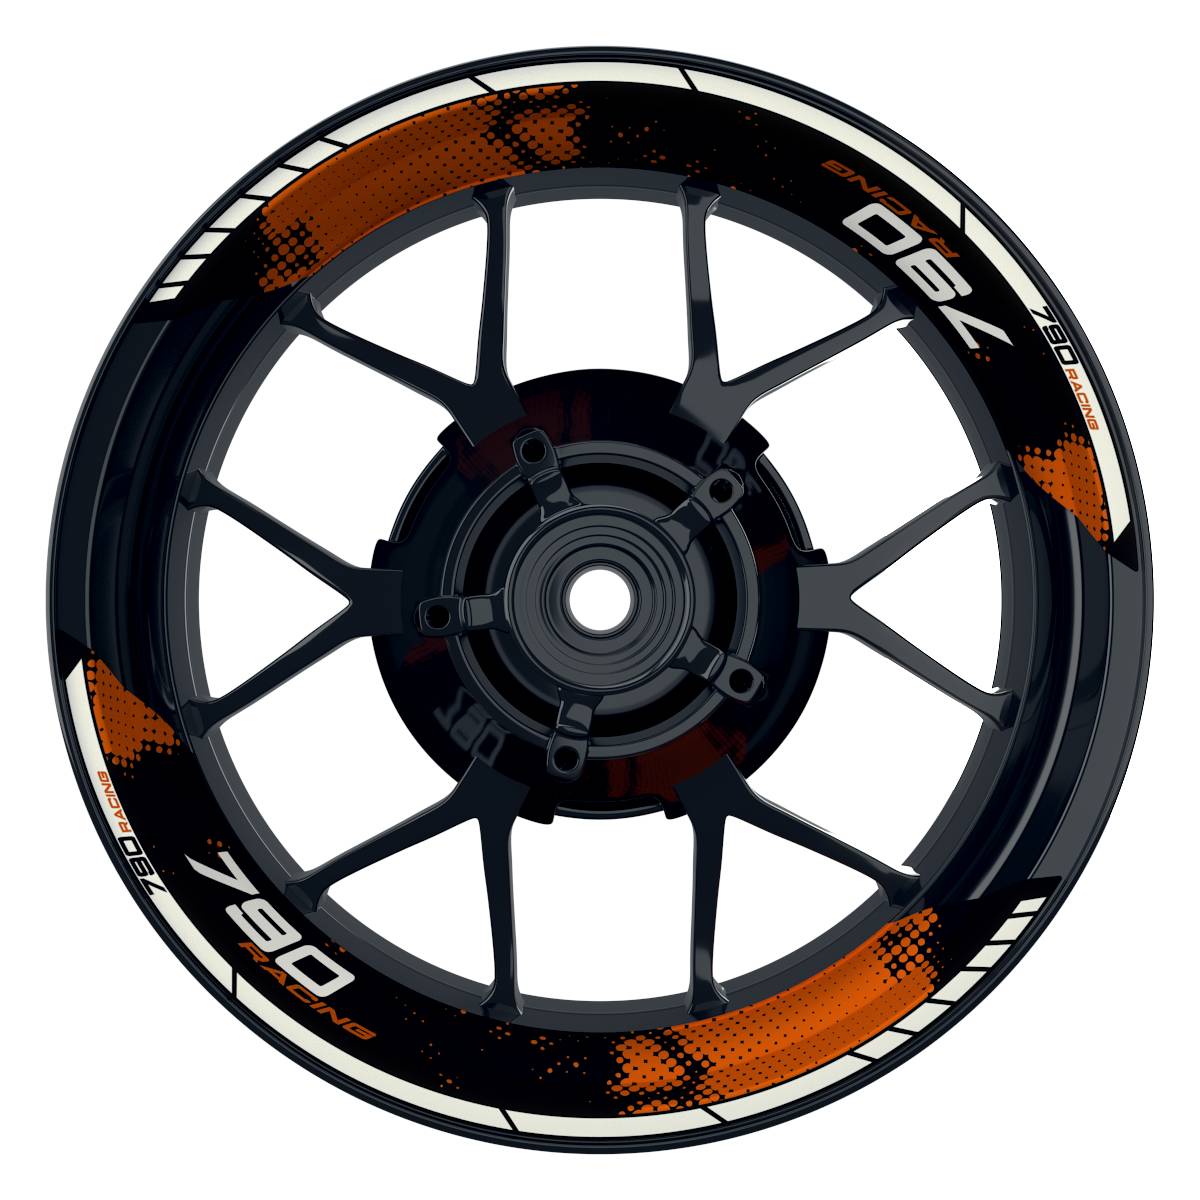 KTM Racing 790 Dots schwarz orange Frontansicht